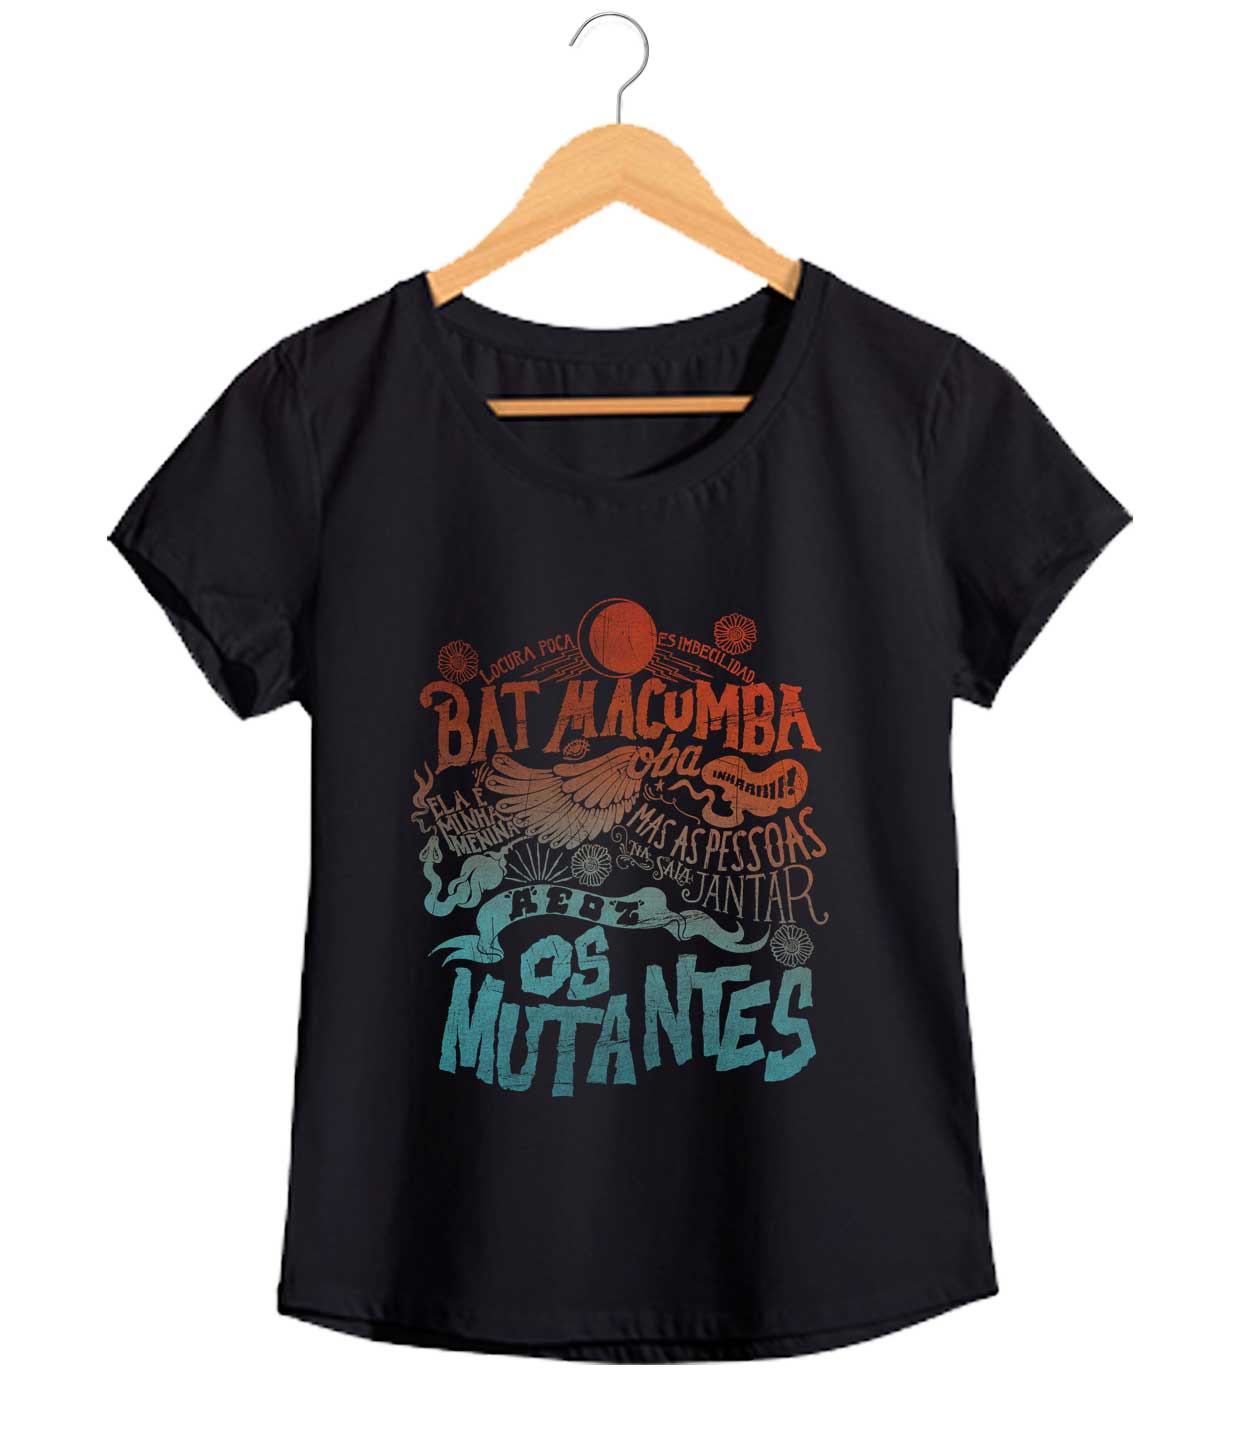 Camiseta Os Mutantes - Feminino